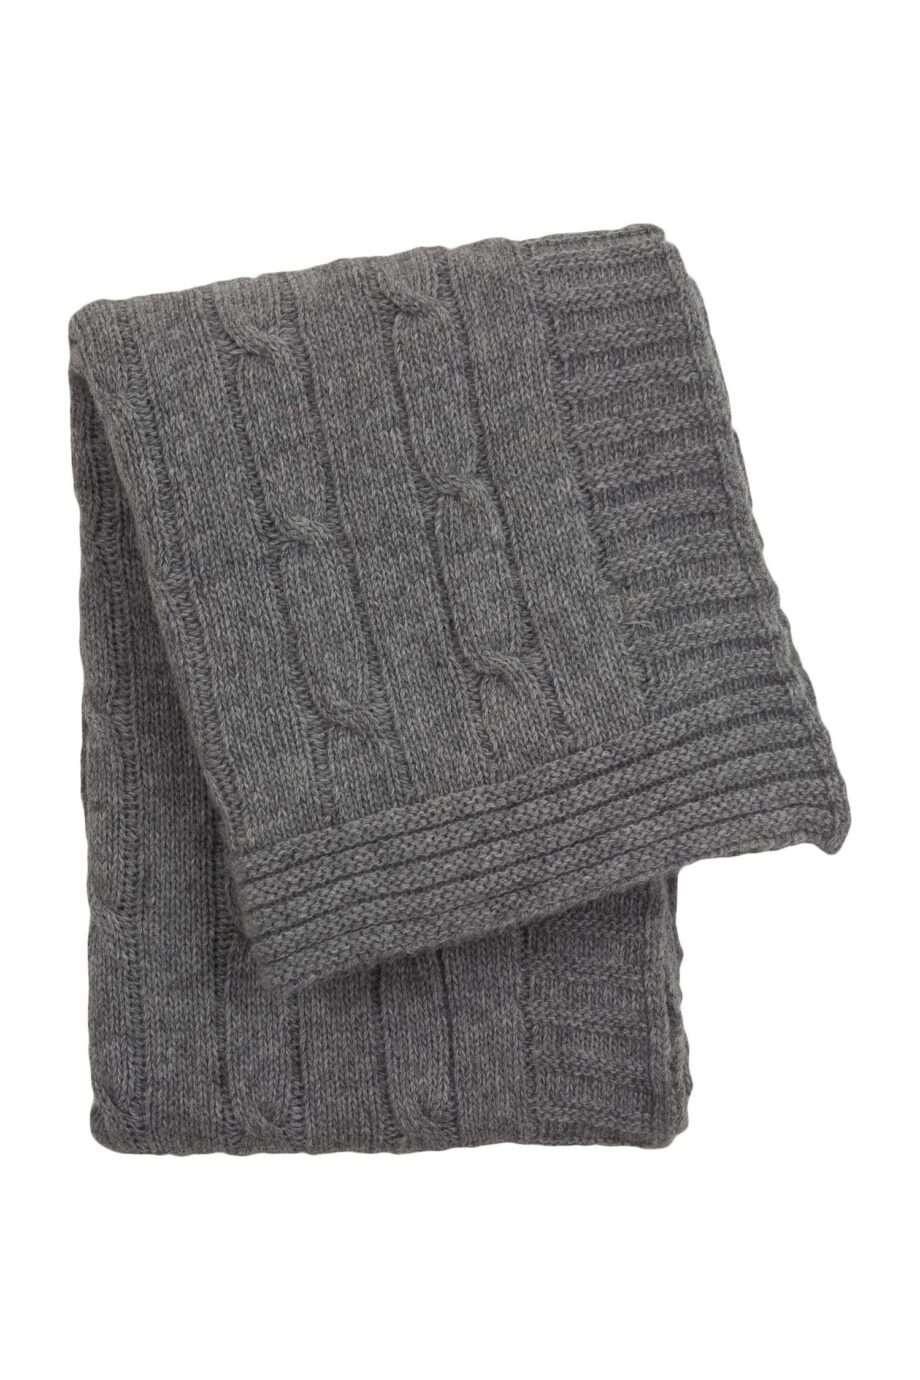 twist grey knitted woolen little blanket medium